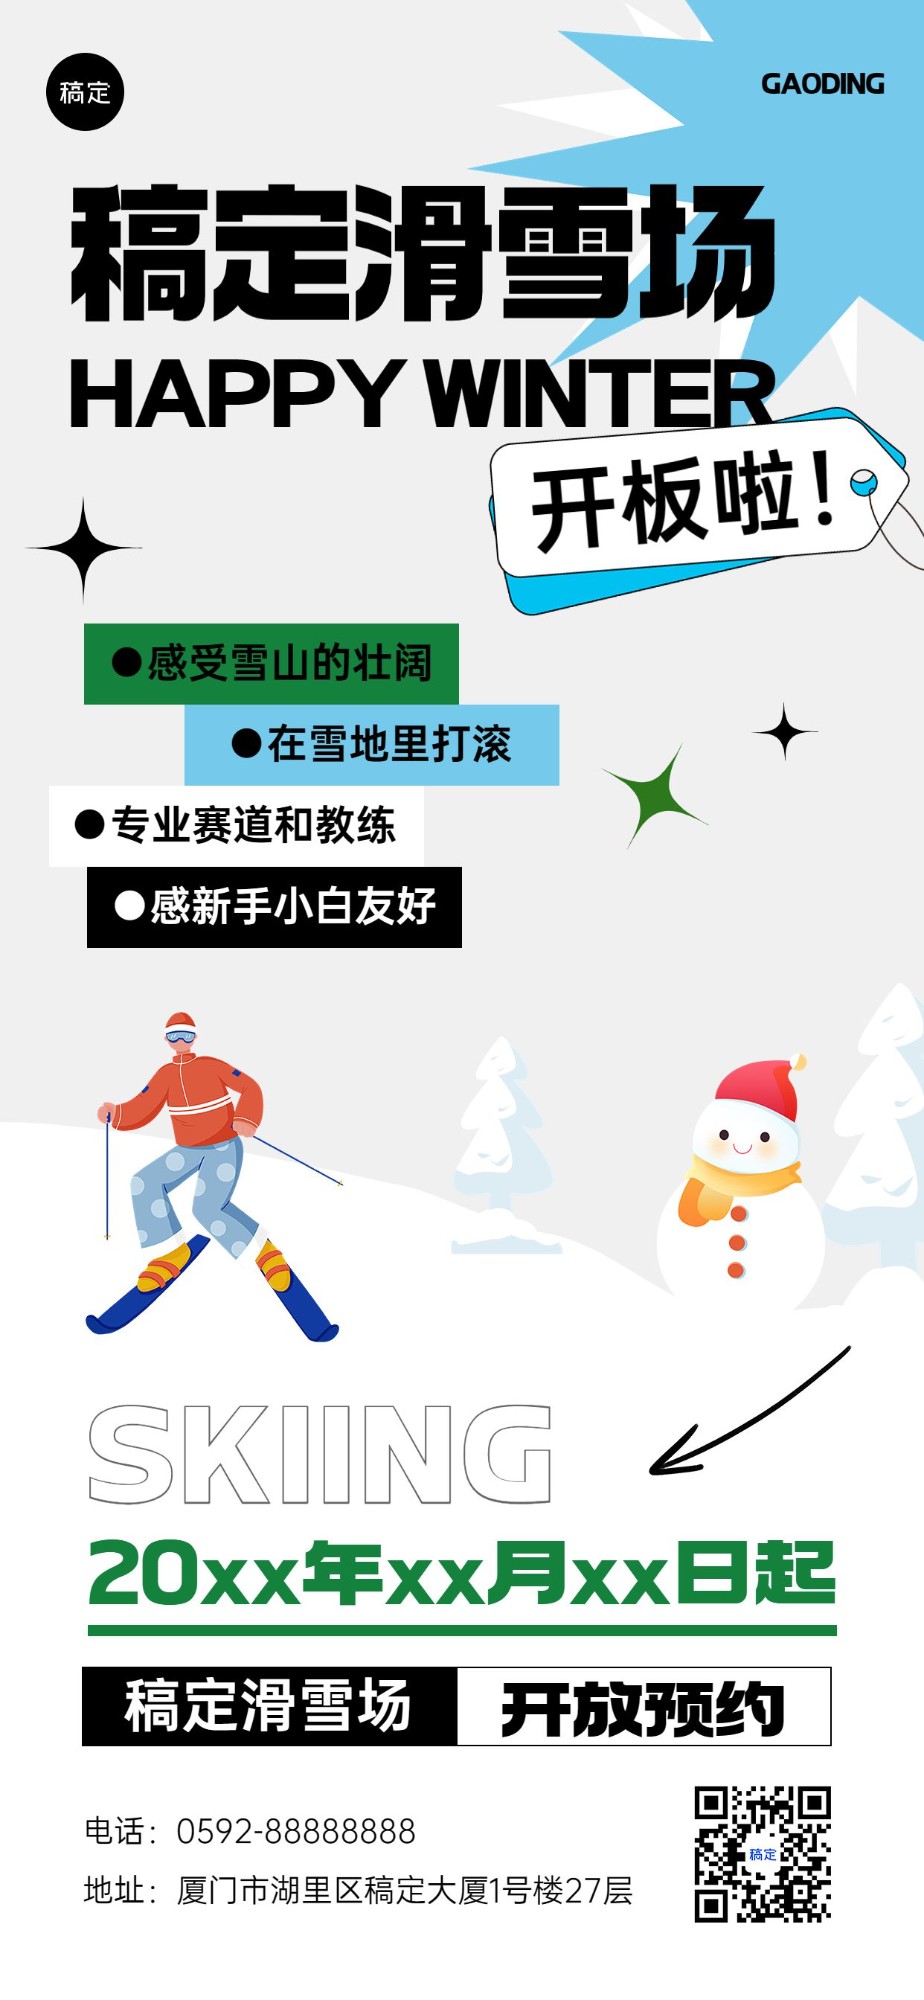 旅游出行滑雪景区景点预约指南全屏竖版海报